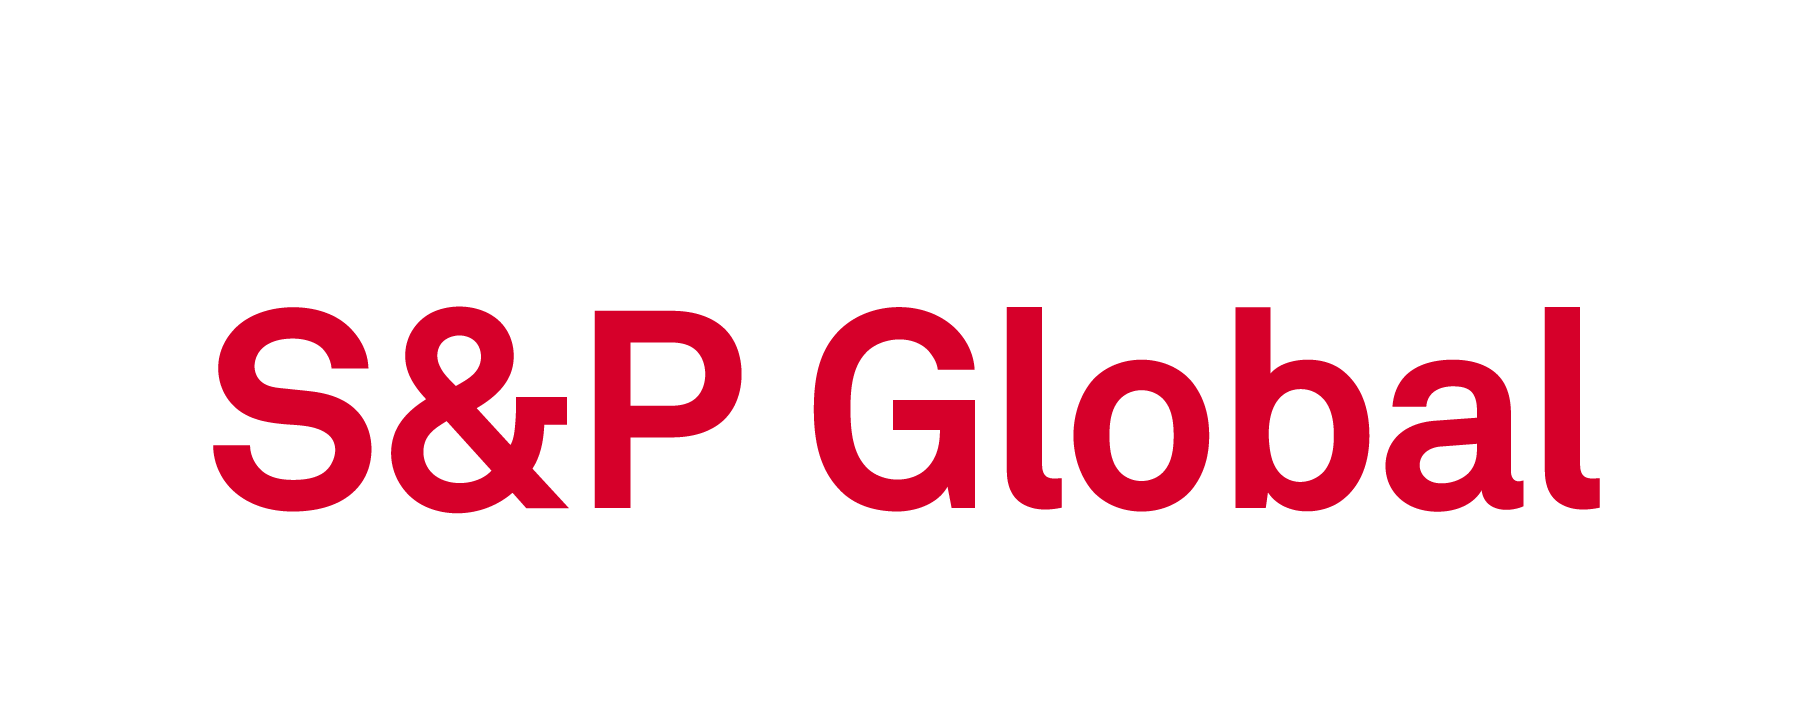 P s bank. S&P Global. S&P лого. S&P Global Platts. S P Global Platts лого.